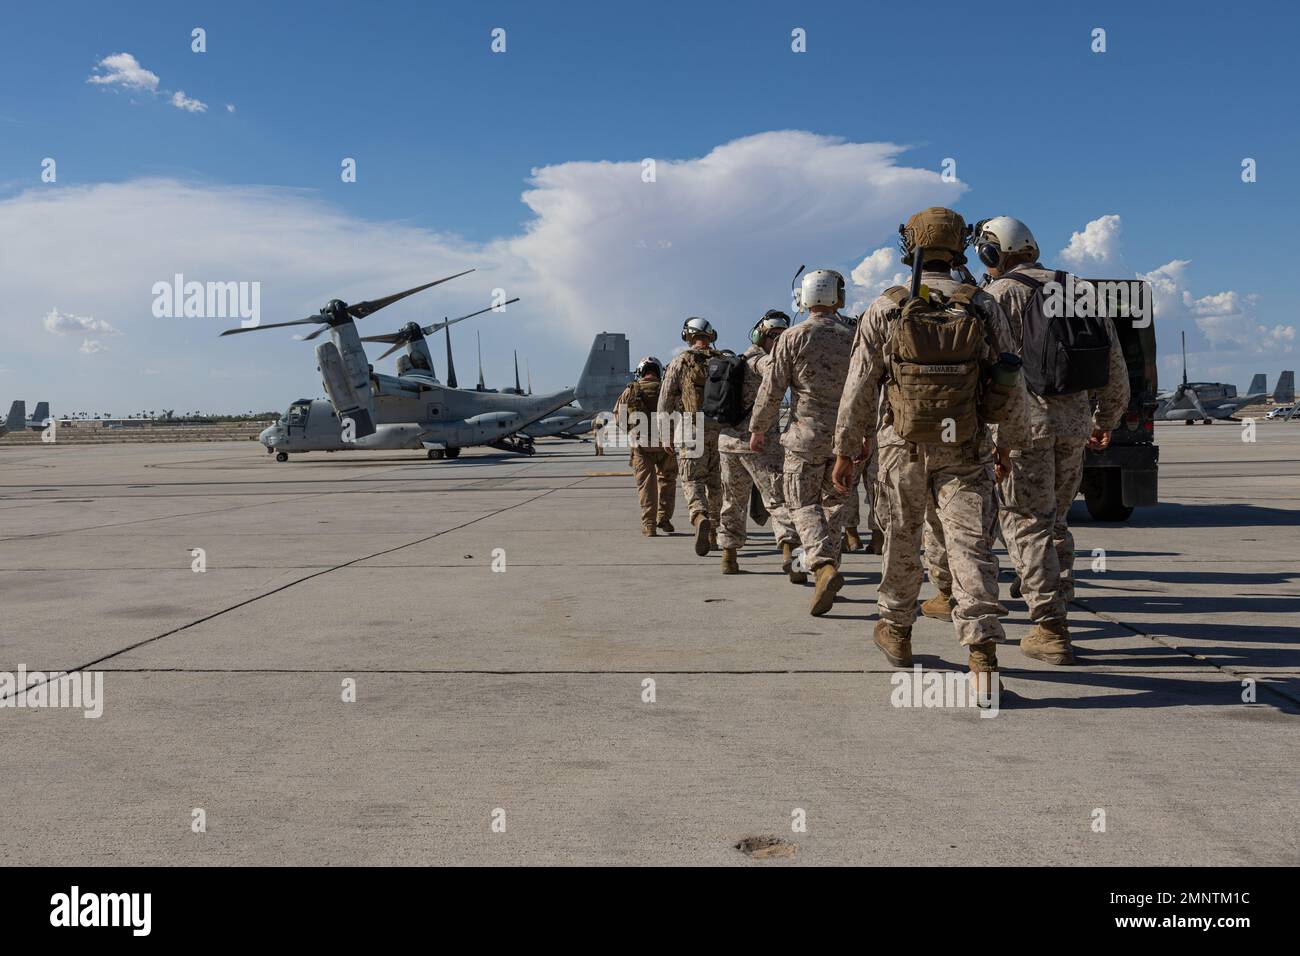 Les Marines des États-Unis affectés à l'escadron 1 des armes et tactiques de l'aviation maritime (MAWTS-1) se préparent à embarquer un cours MV-22B Osprey au cours du cours 1-23 des instructeurs d'armes et de tactiques (WTI) à la station aérienne du corps des Marines Yuma, en Arizona, le 5 octobre 2022. WTI est un événement de formation de sept semaines organisé par MAWTS-1, offrant une formation tactique avancée standardisée et une certification des qualifications des instructeurs de l'unité pour soutenir la formation et la préparation à l'aviation maritime, et aide à développer et à employer des armes et des tactiques d'aviation. Banque D'Images